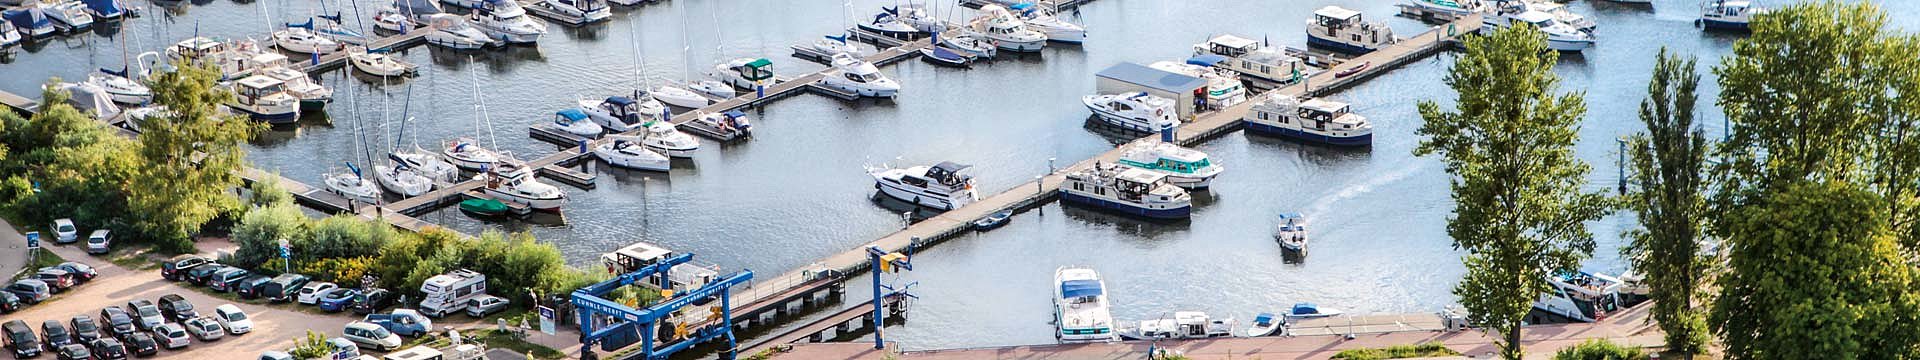 Der Verkaufssteg im Hafendorf Müritz mit breiten Angebot an Hausbooten vom Typ Kormoran Vetus und Motoryachten.